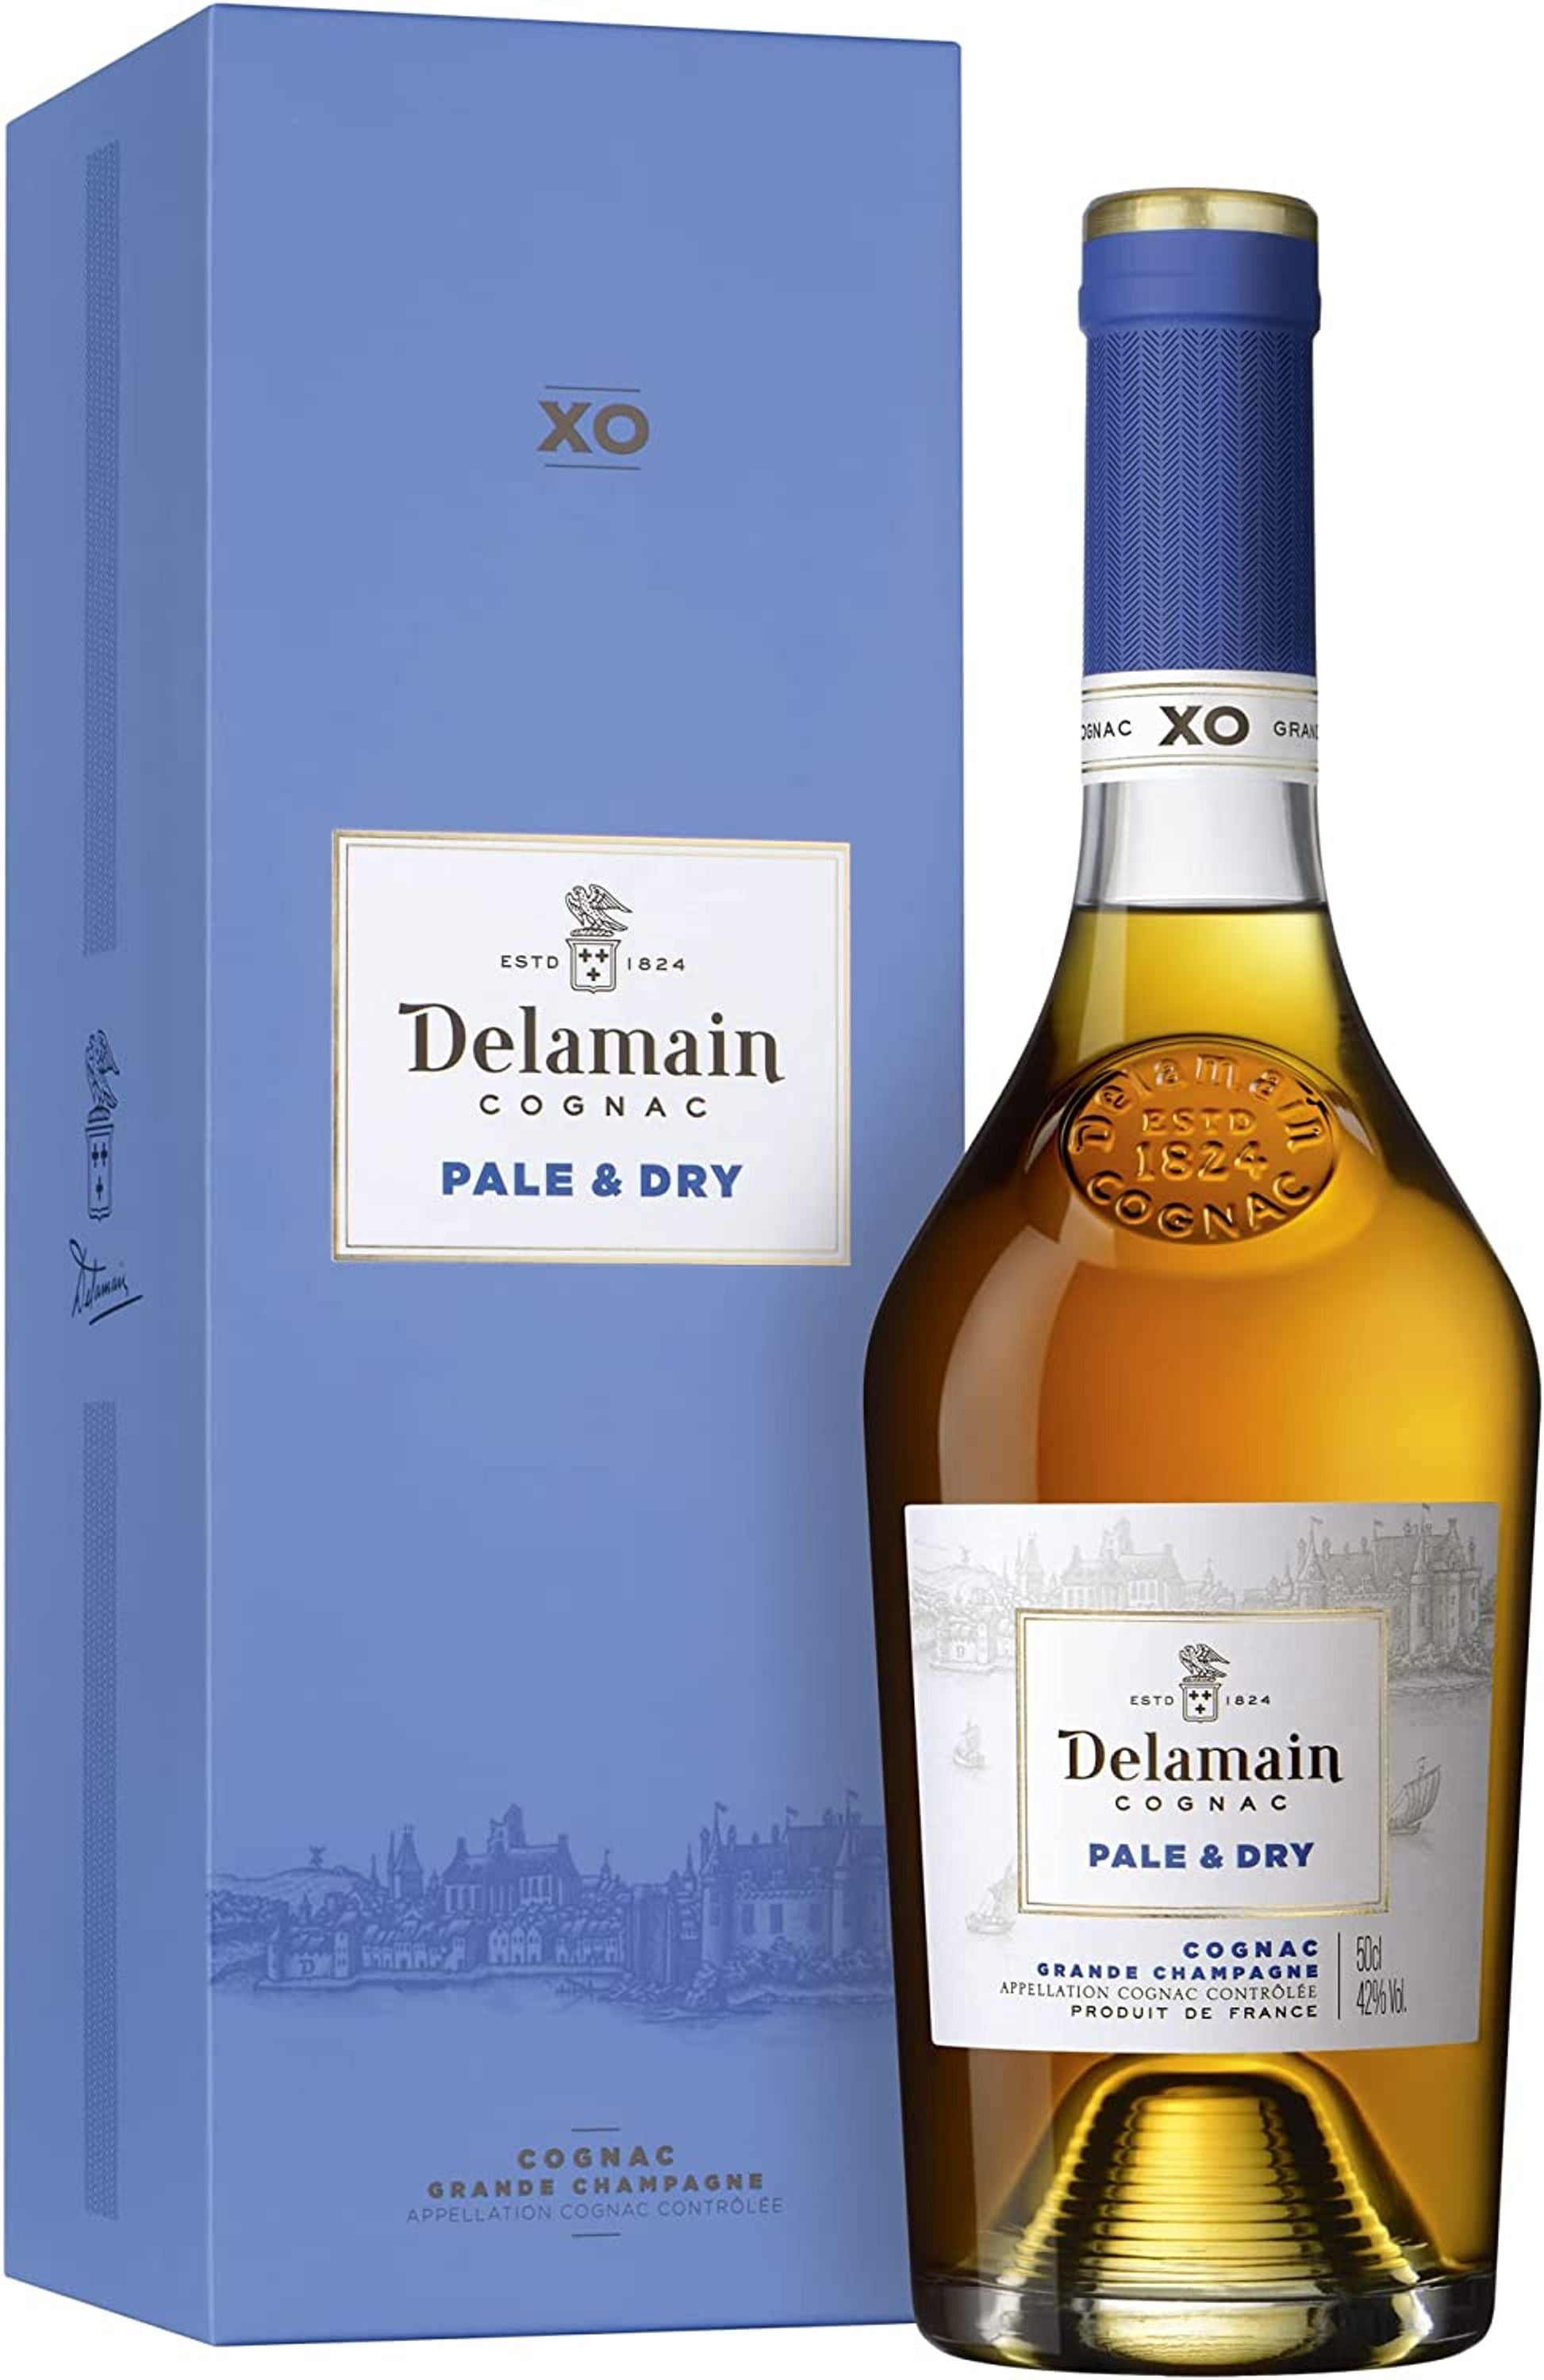 Delamain XO Pale &amp; Dry 0,5l, alc. 42% by volume, Cognac France